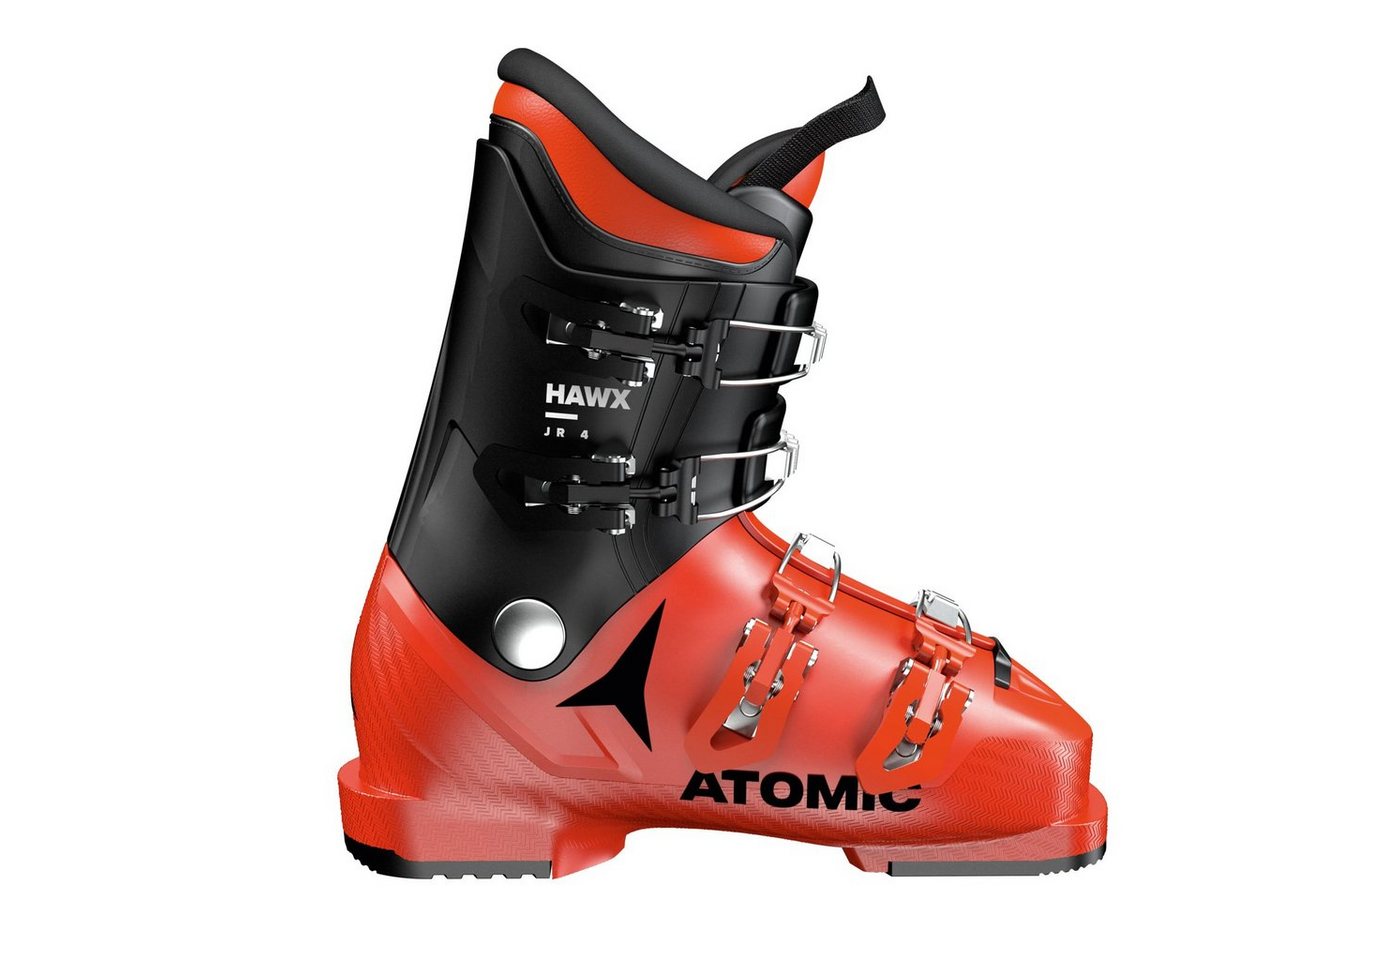 Atomic ATOMIC Kinder/Jugendlichen Skischuh HAWX JR 4 Skischuh von Atomic